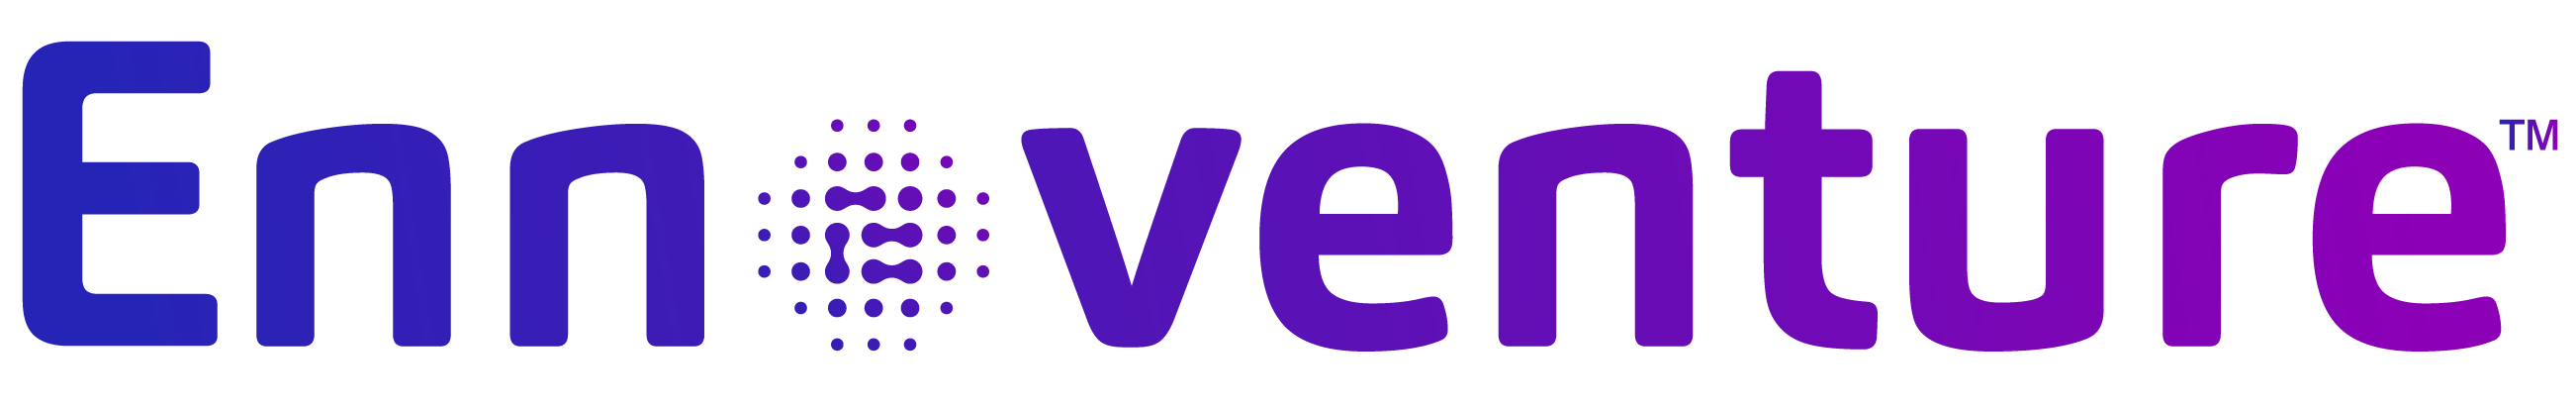 Ennoventure Logo in